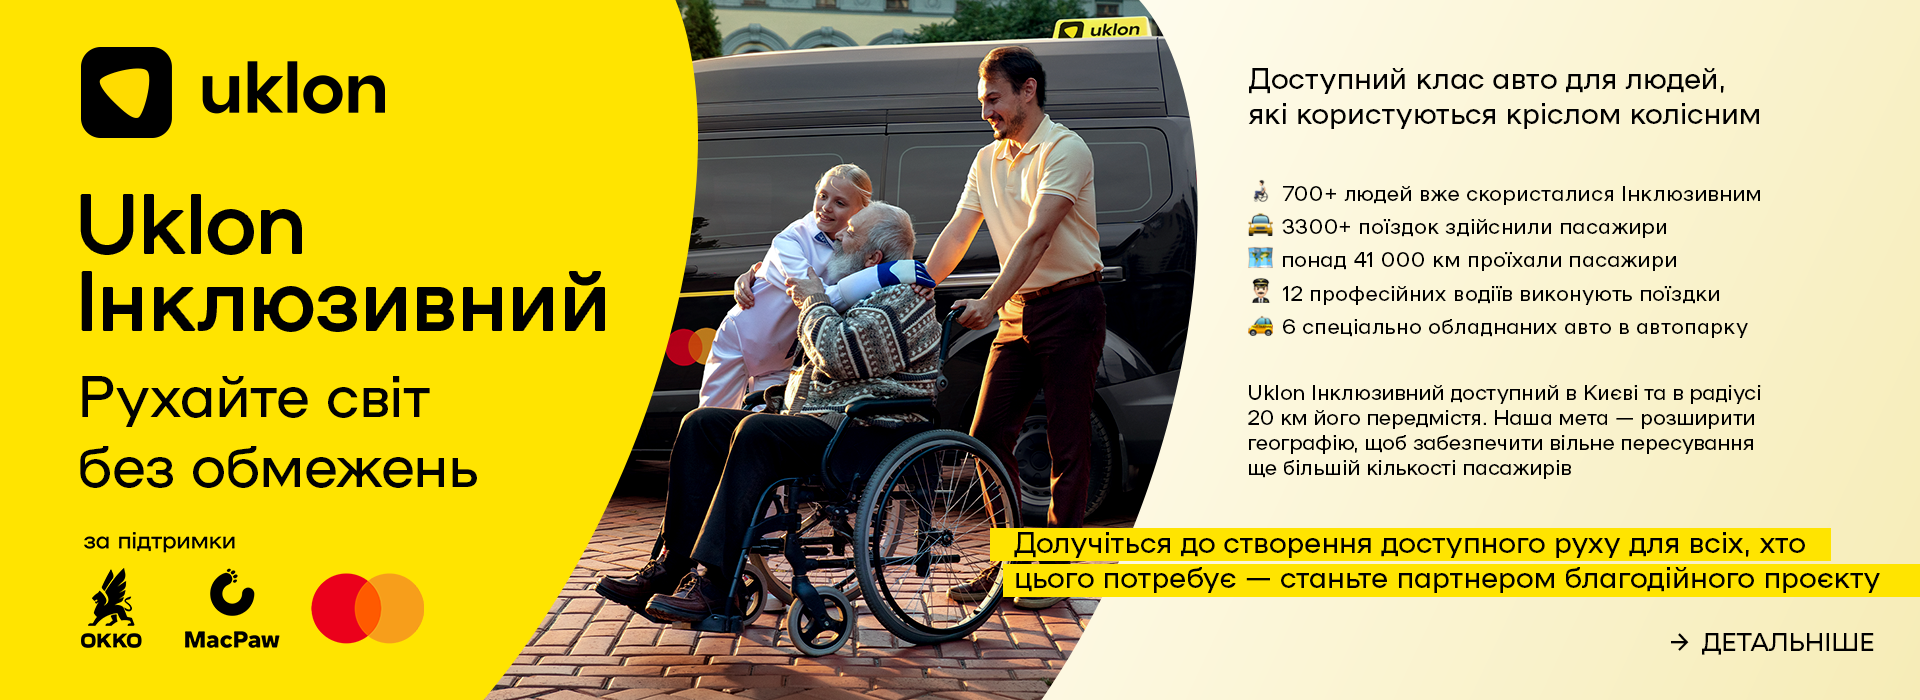 Uklon запустив клас авто для людей з інвалідністю, які користуються кріслом колісним